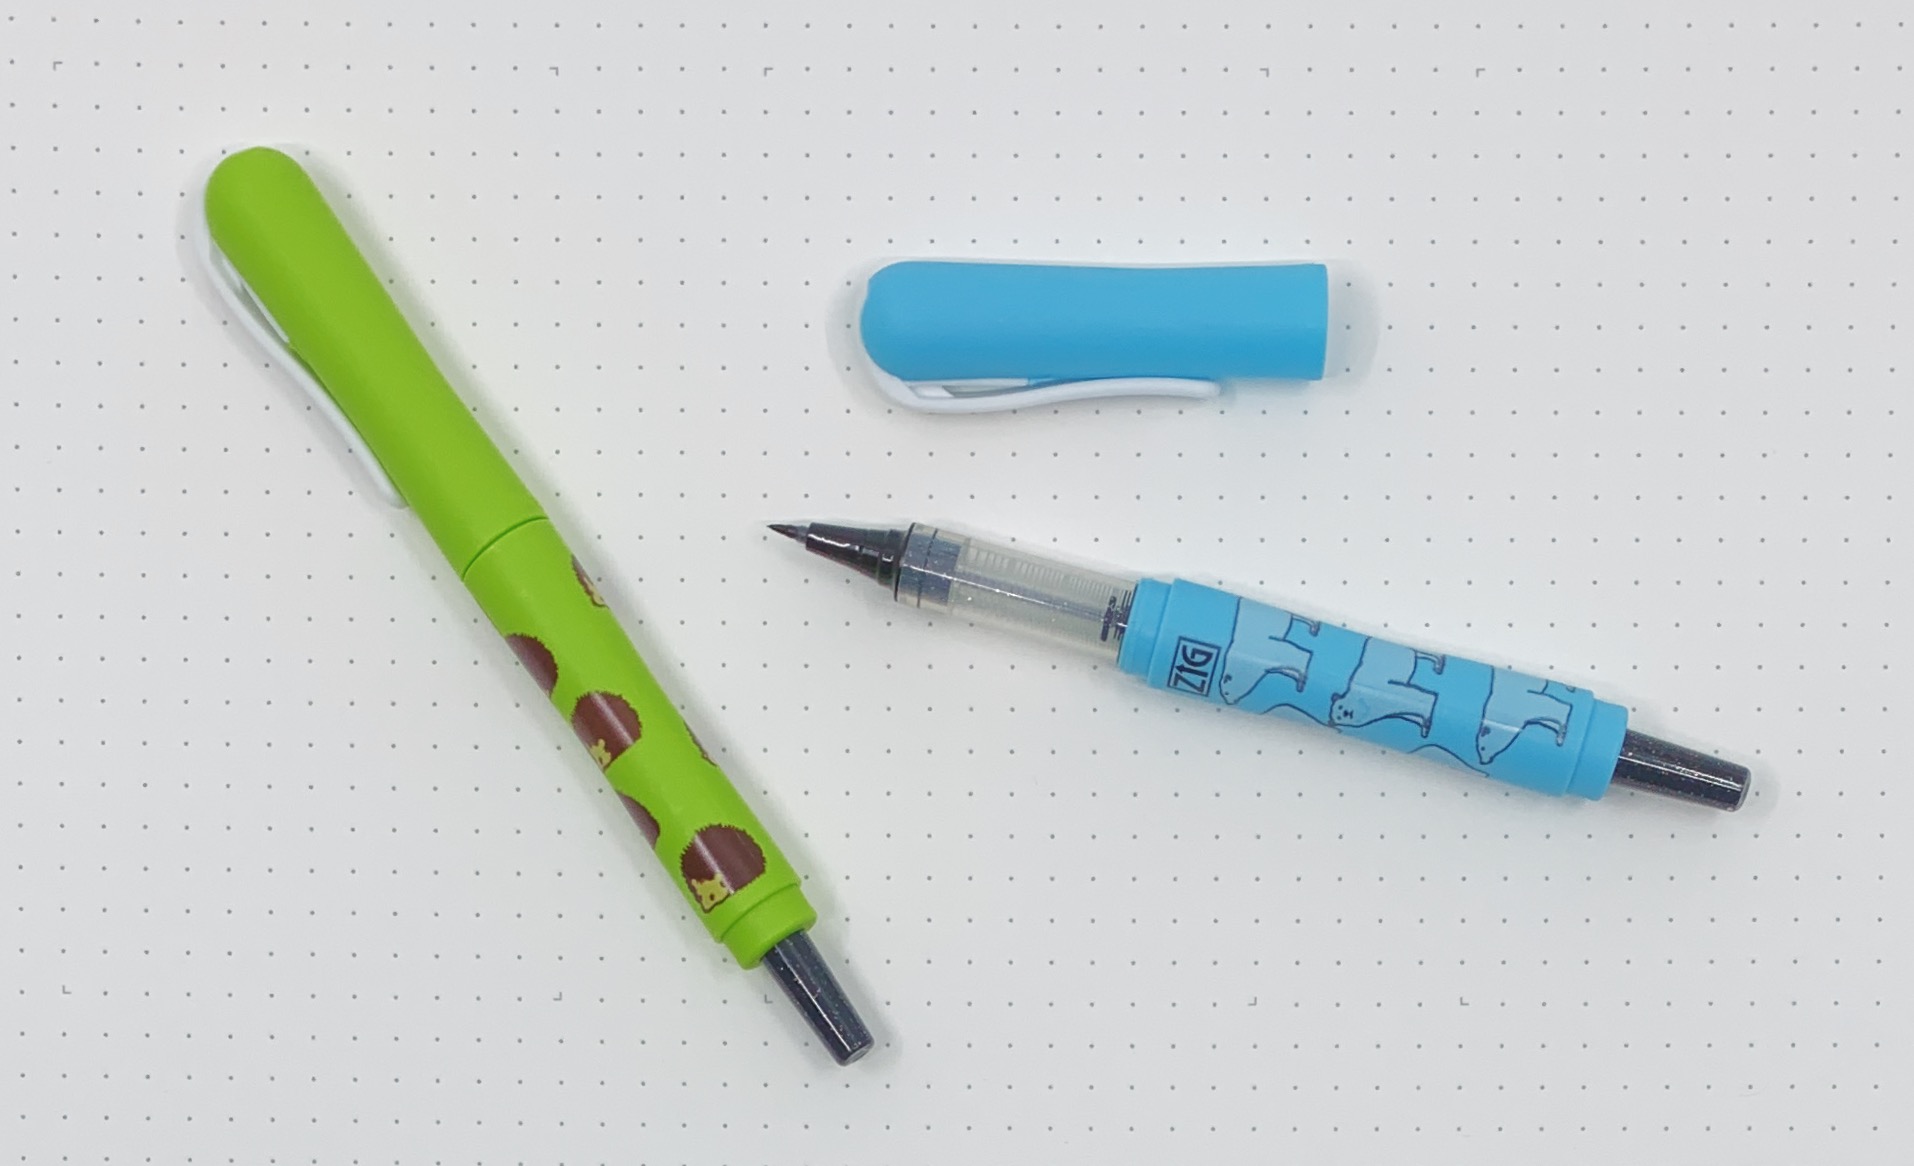 Zig Eraser Pen - Round Tip